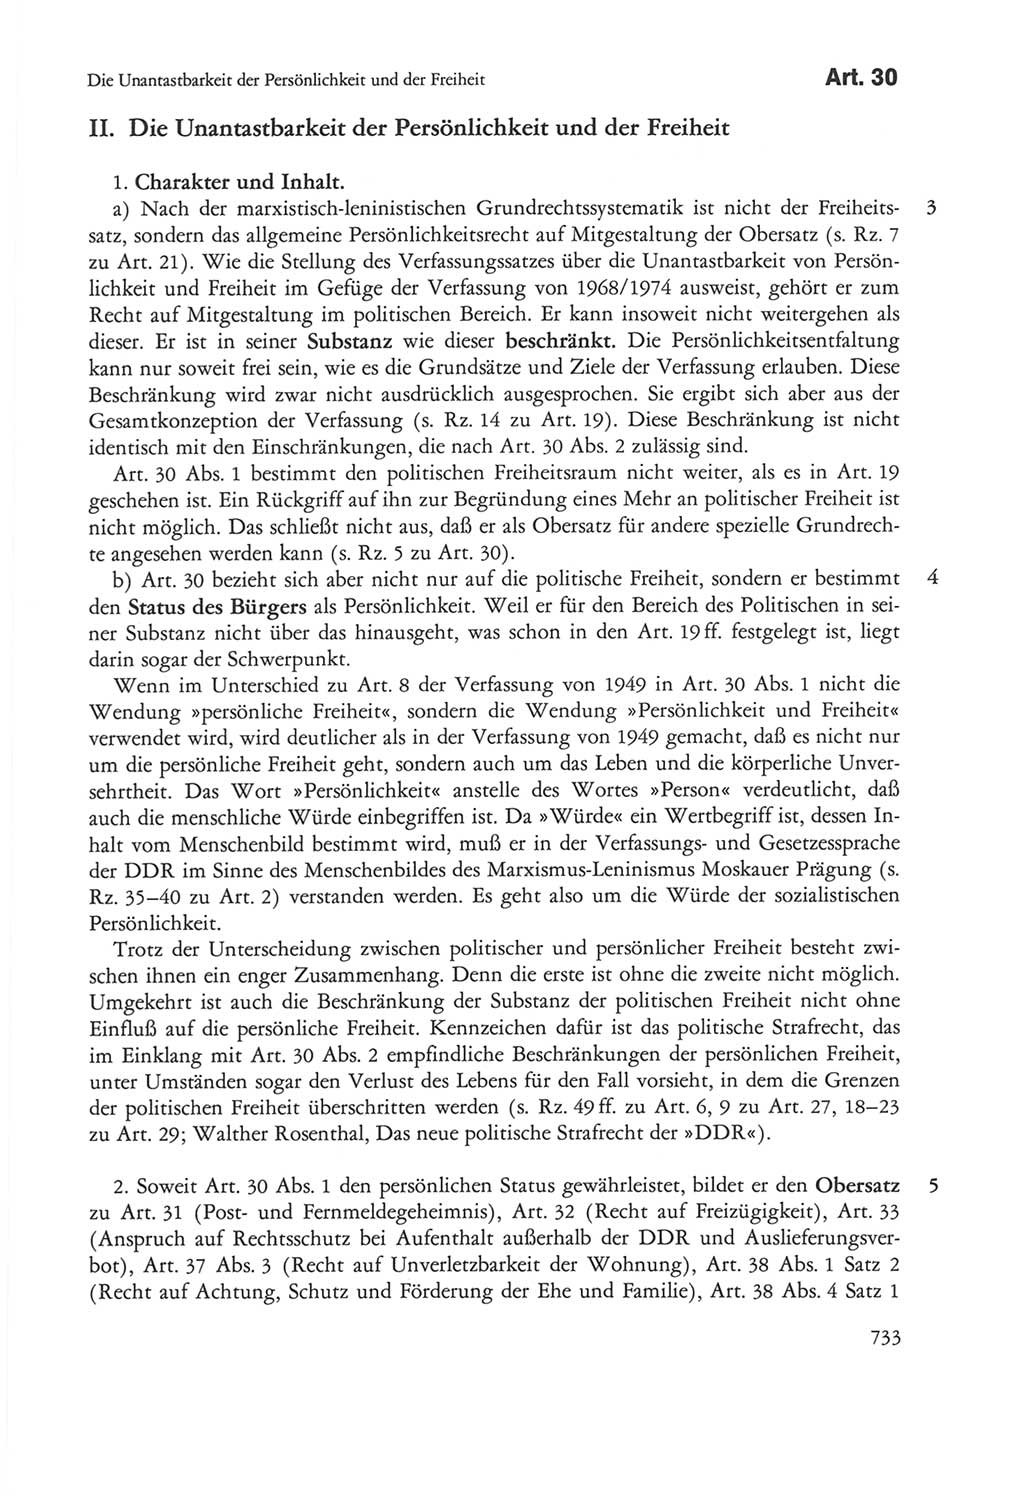 Die sozialistische Verfassung der Deutschen Demokratischen Republik (DDR), Kommentar mit einem Nachtrag 1997, Seite 733 (Soz. Verf. DDR Komm. Nachtr. 1997, S. 733)